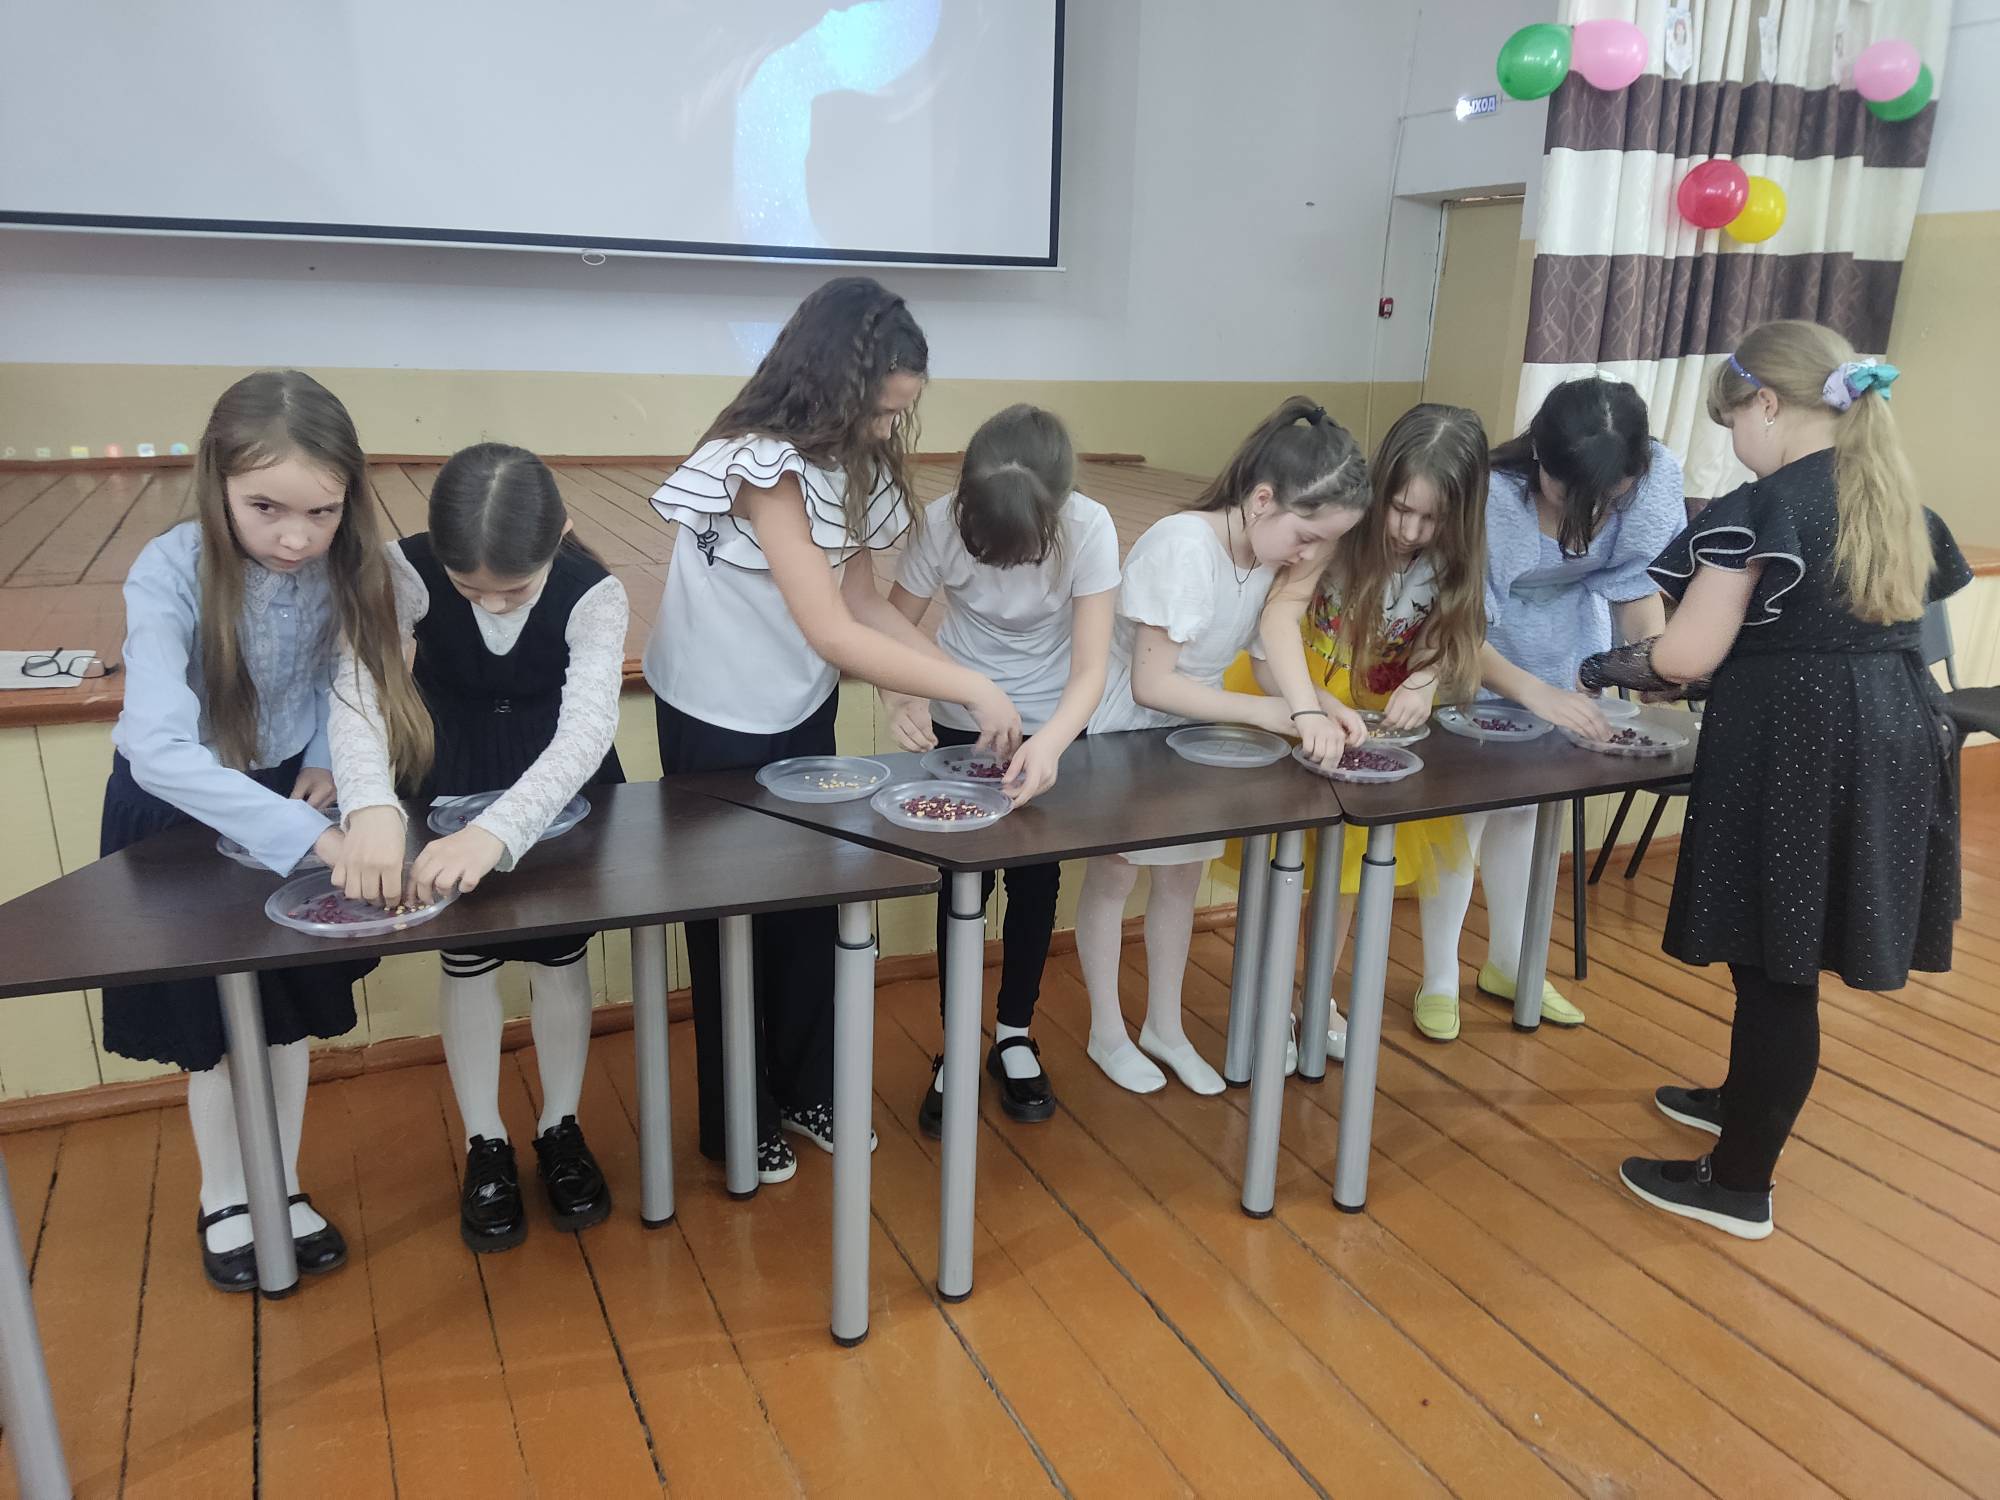 5 и 6 марта в МБОУ «Бродковская СОШ» прошли мероприятия для обучающихся начальных классов «А ну-ка, девочки».